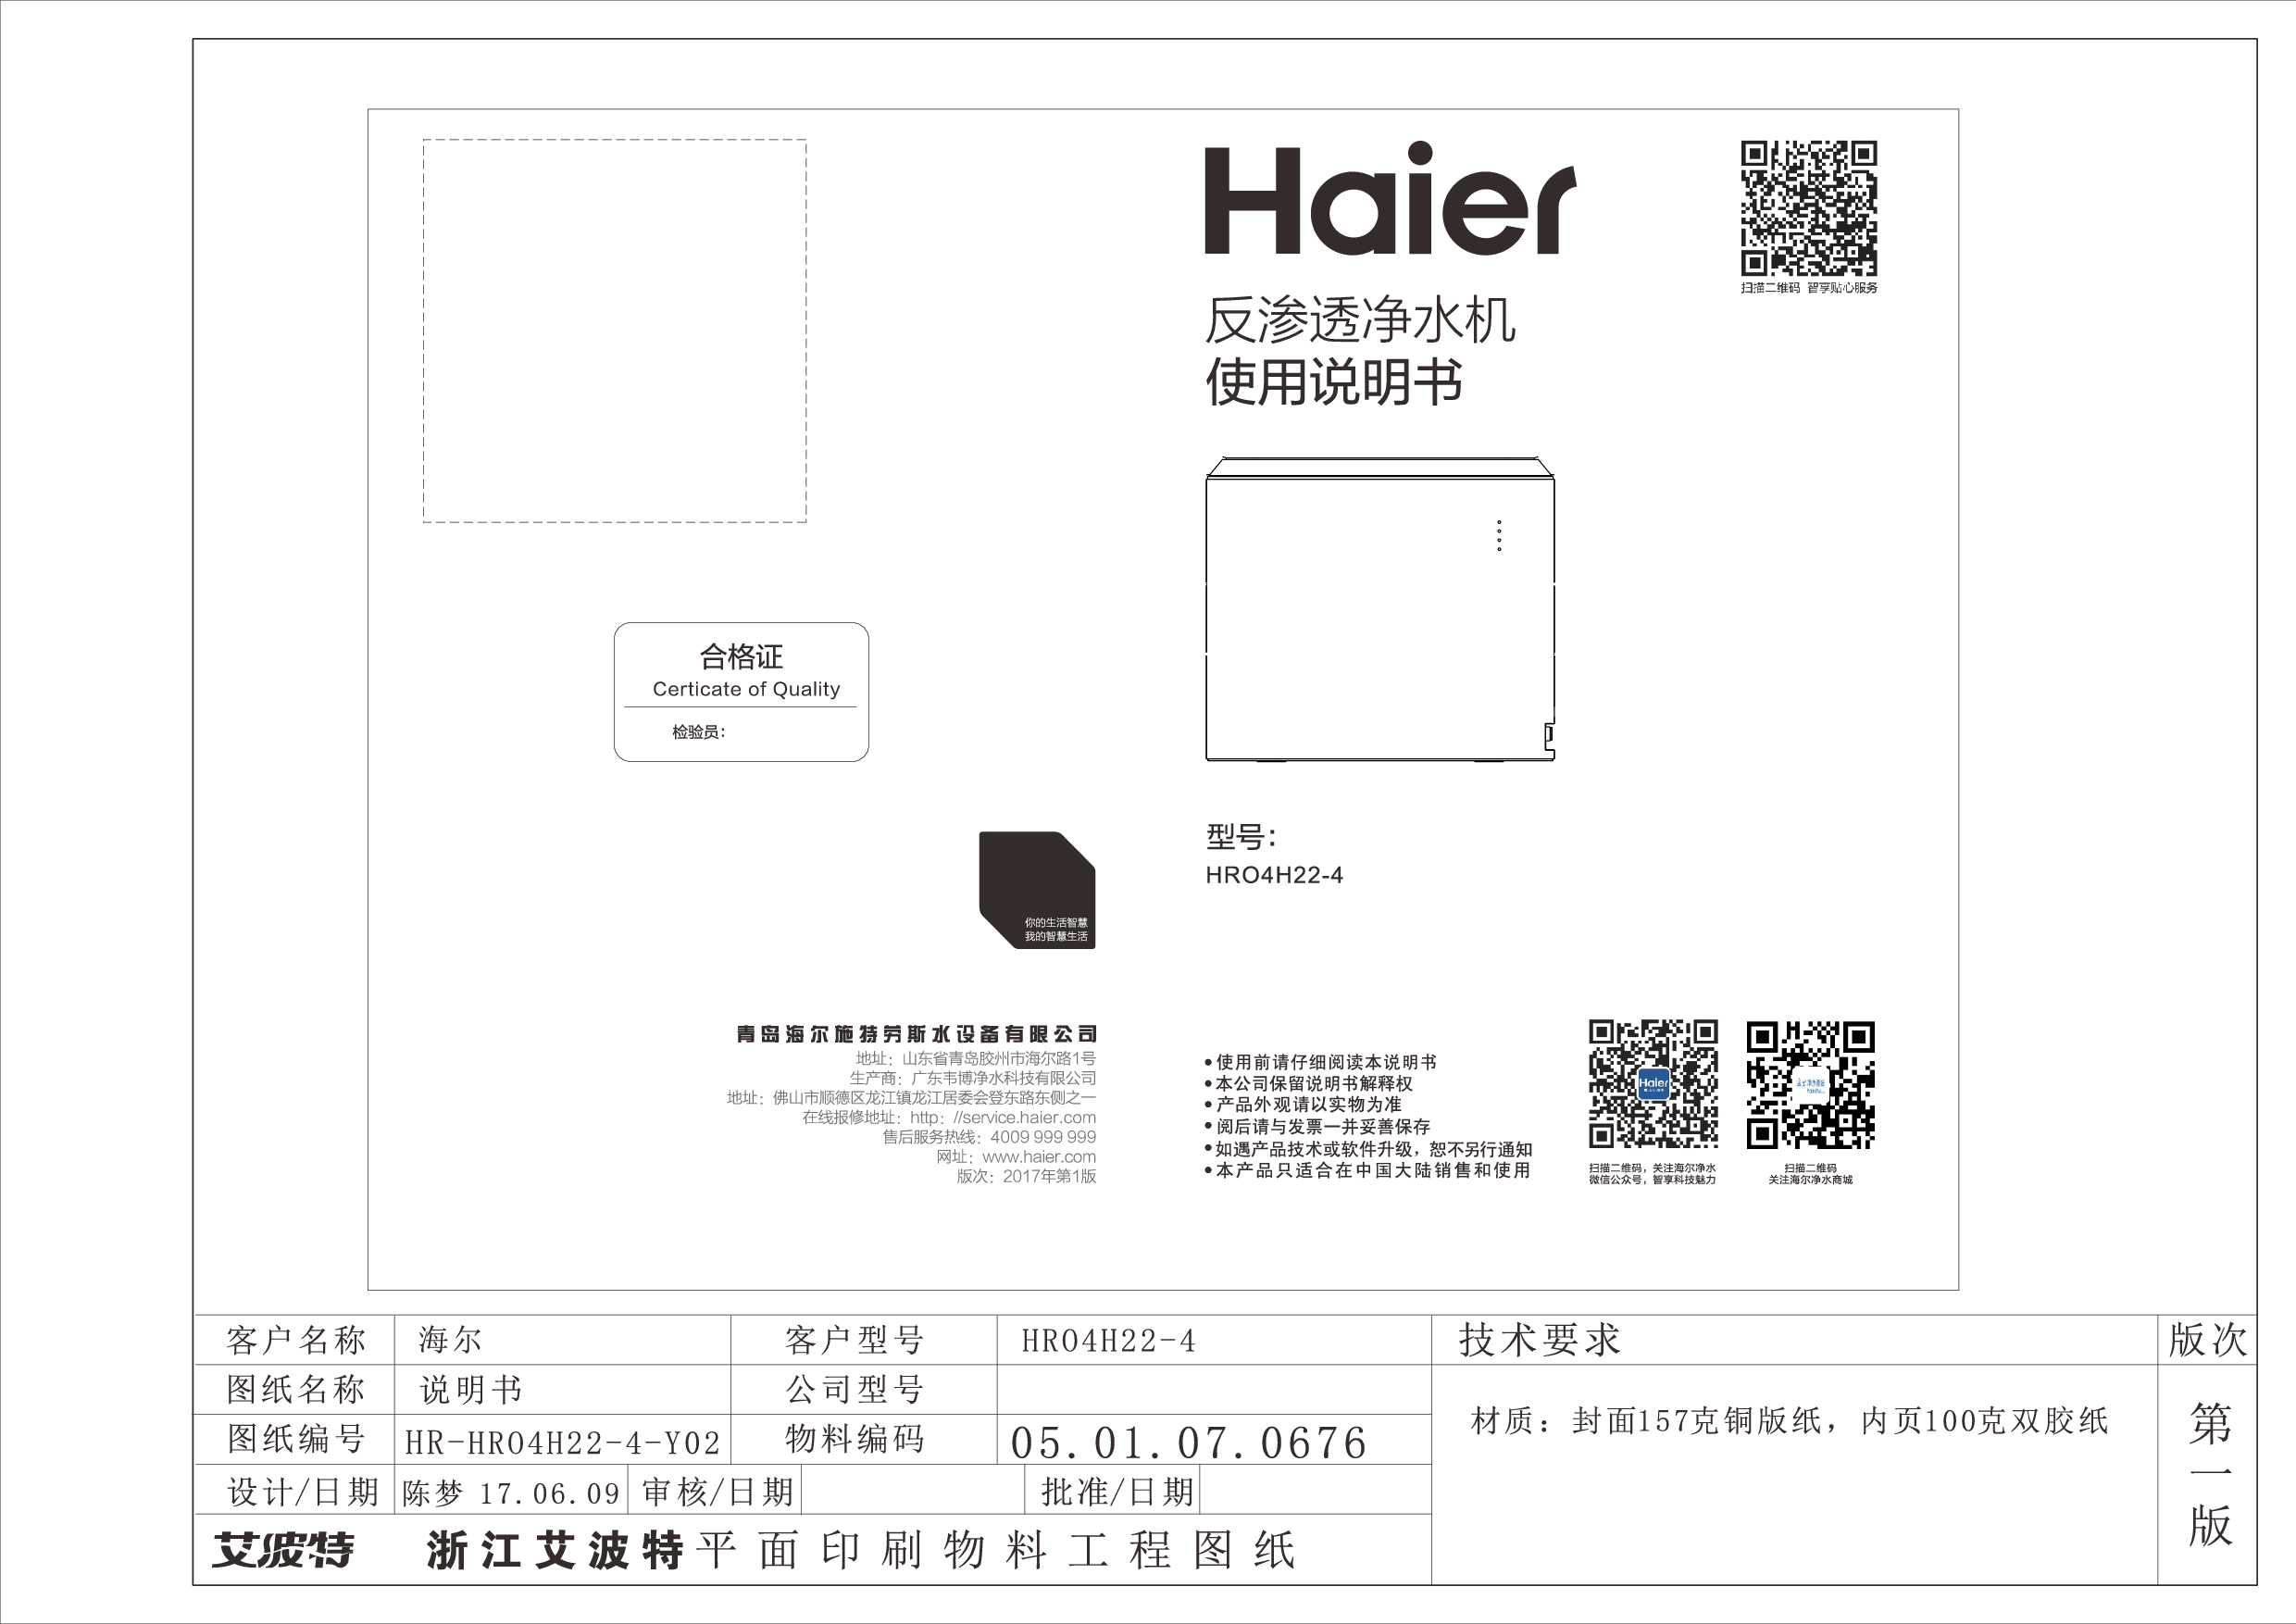 海尔 Haier HR04H22-4 使用说明书 封面